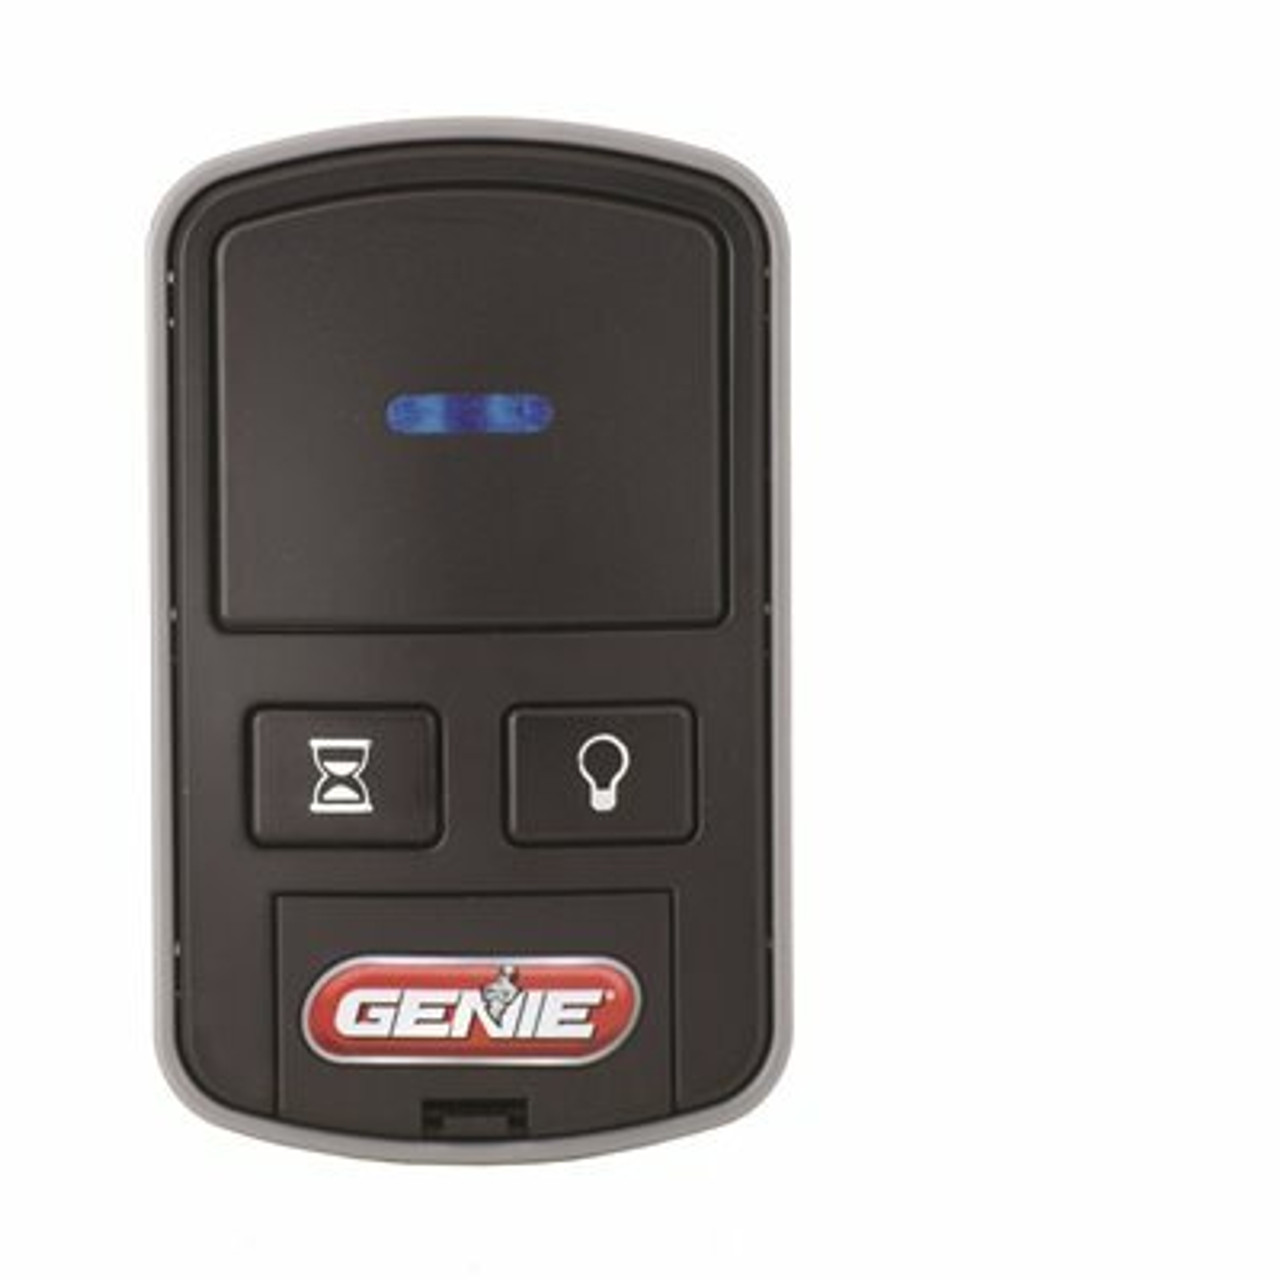 Genie Wireless Wall Console For Garage Door Openers